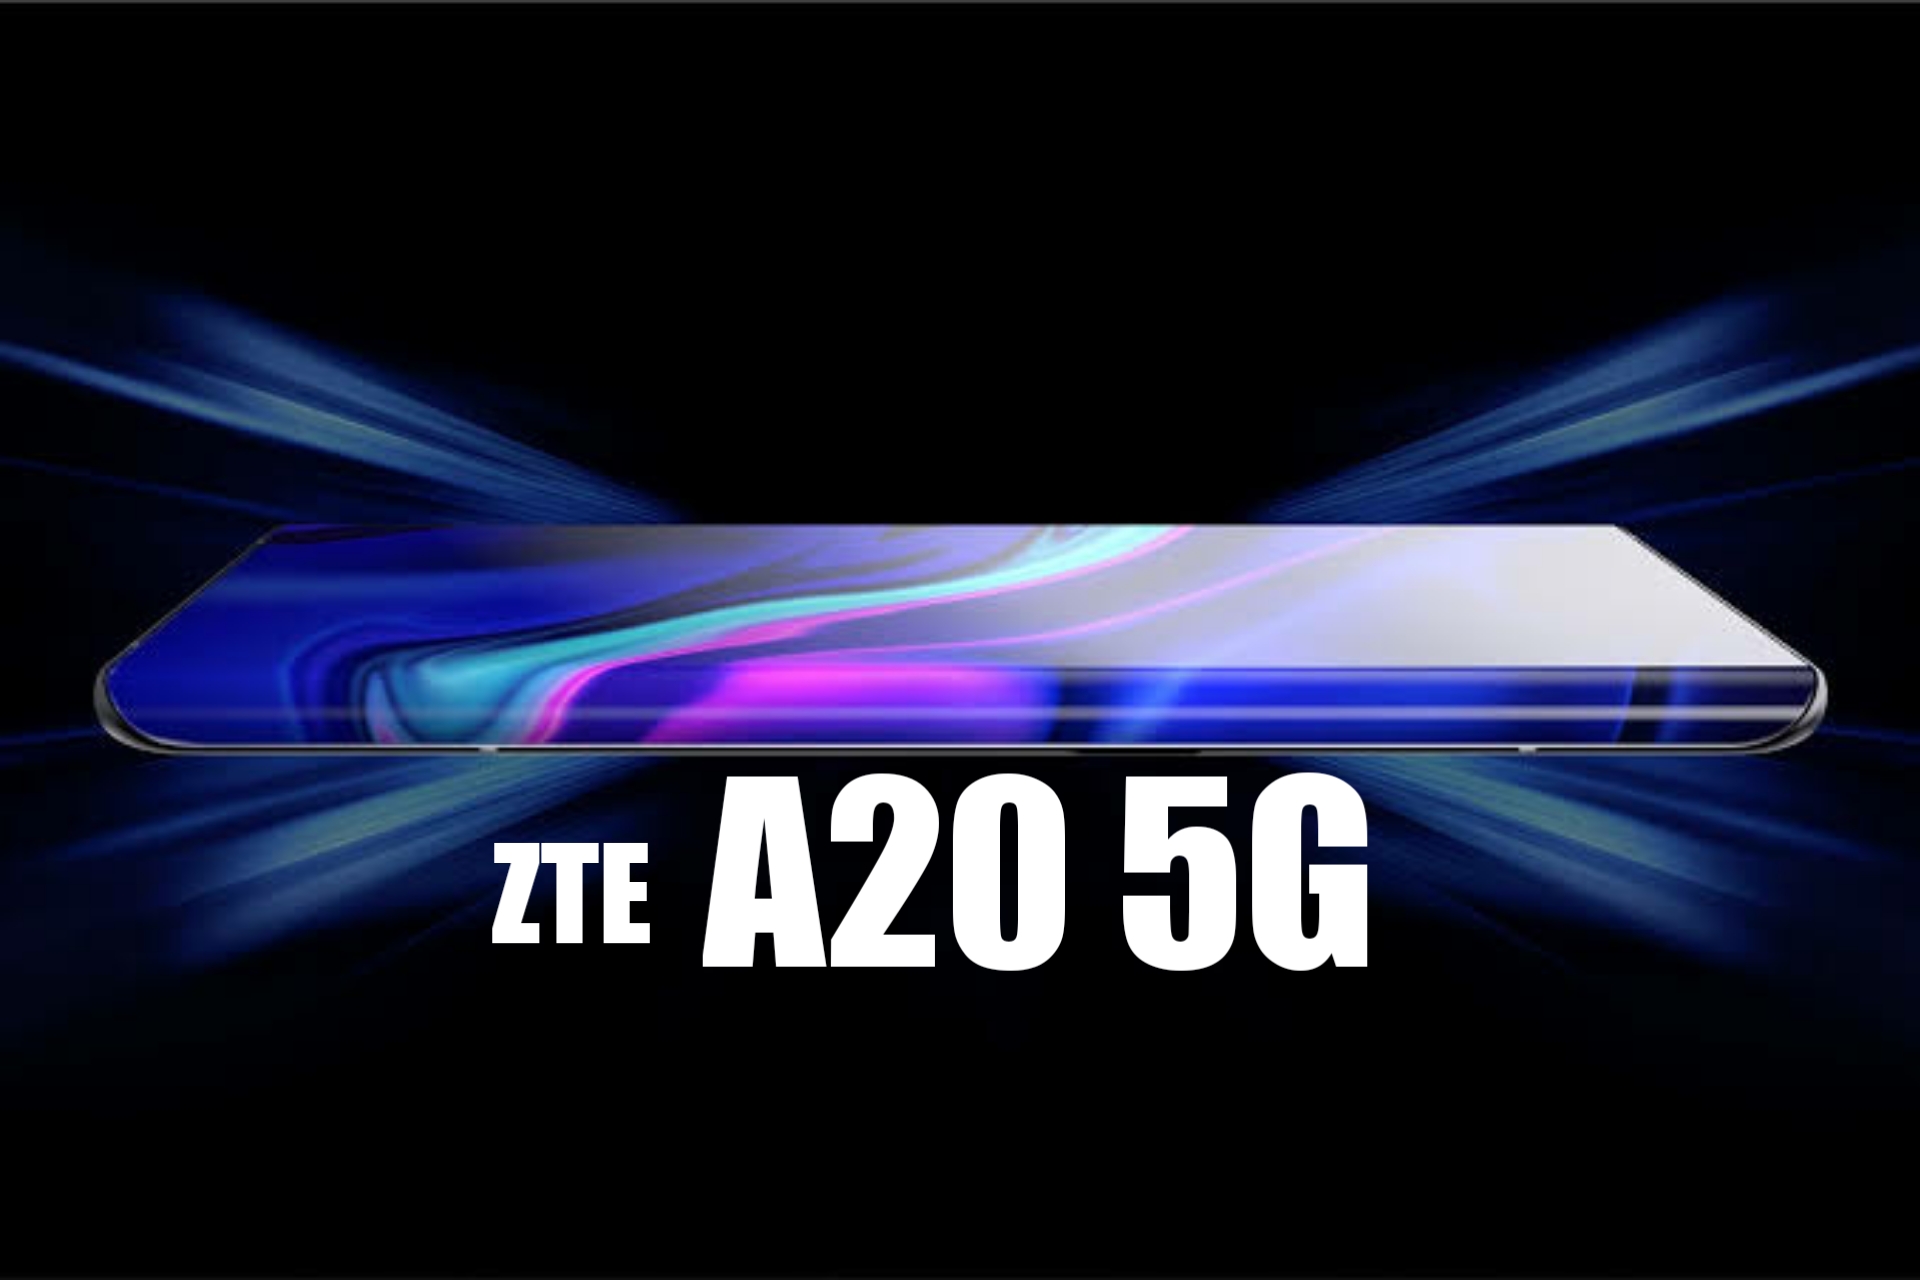 ZTE A20 5G